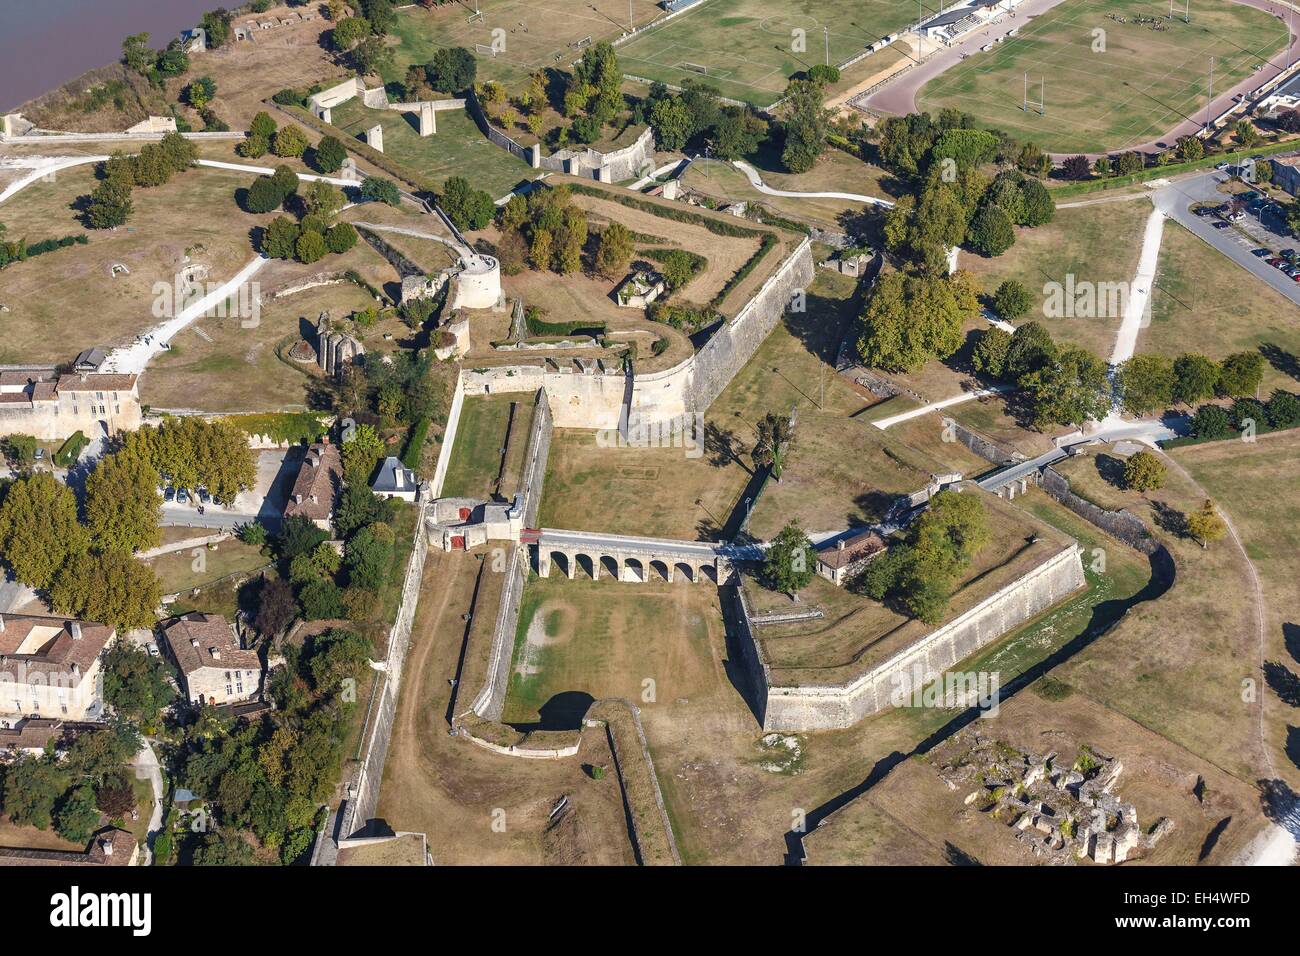 Francia, Gironde, Blaye, la ciudadela, Las fortificaciones de Vauban, catalogado como Patrimonio Mundial por la UNESCO, la Porte royale y Rudel CASTILLO (vista aérea) Foto de stock